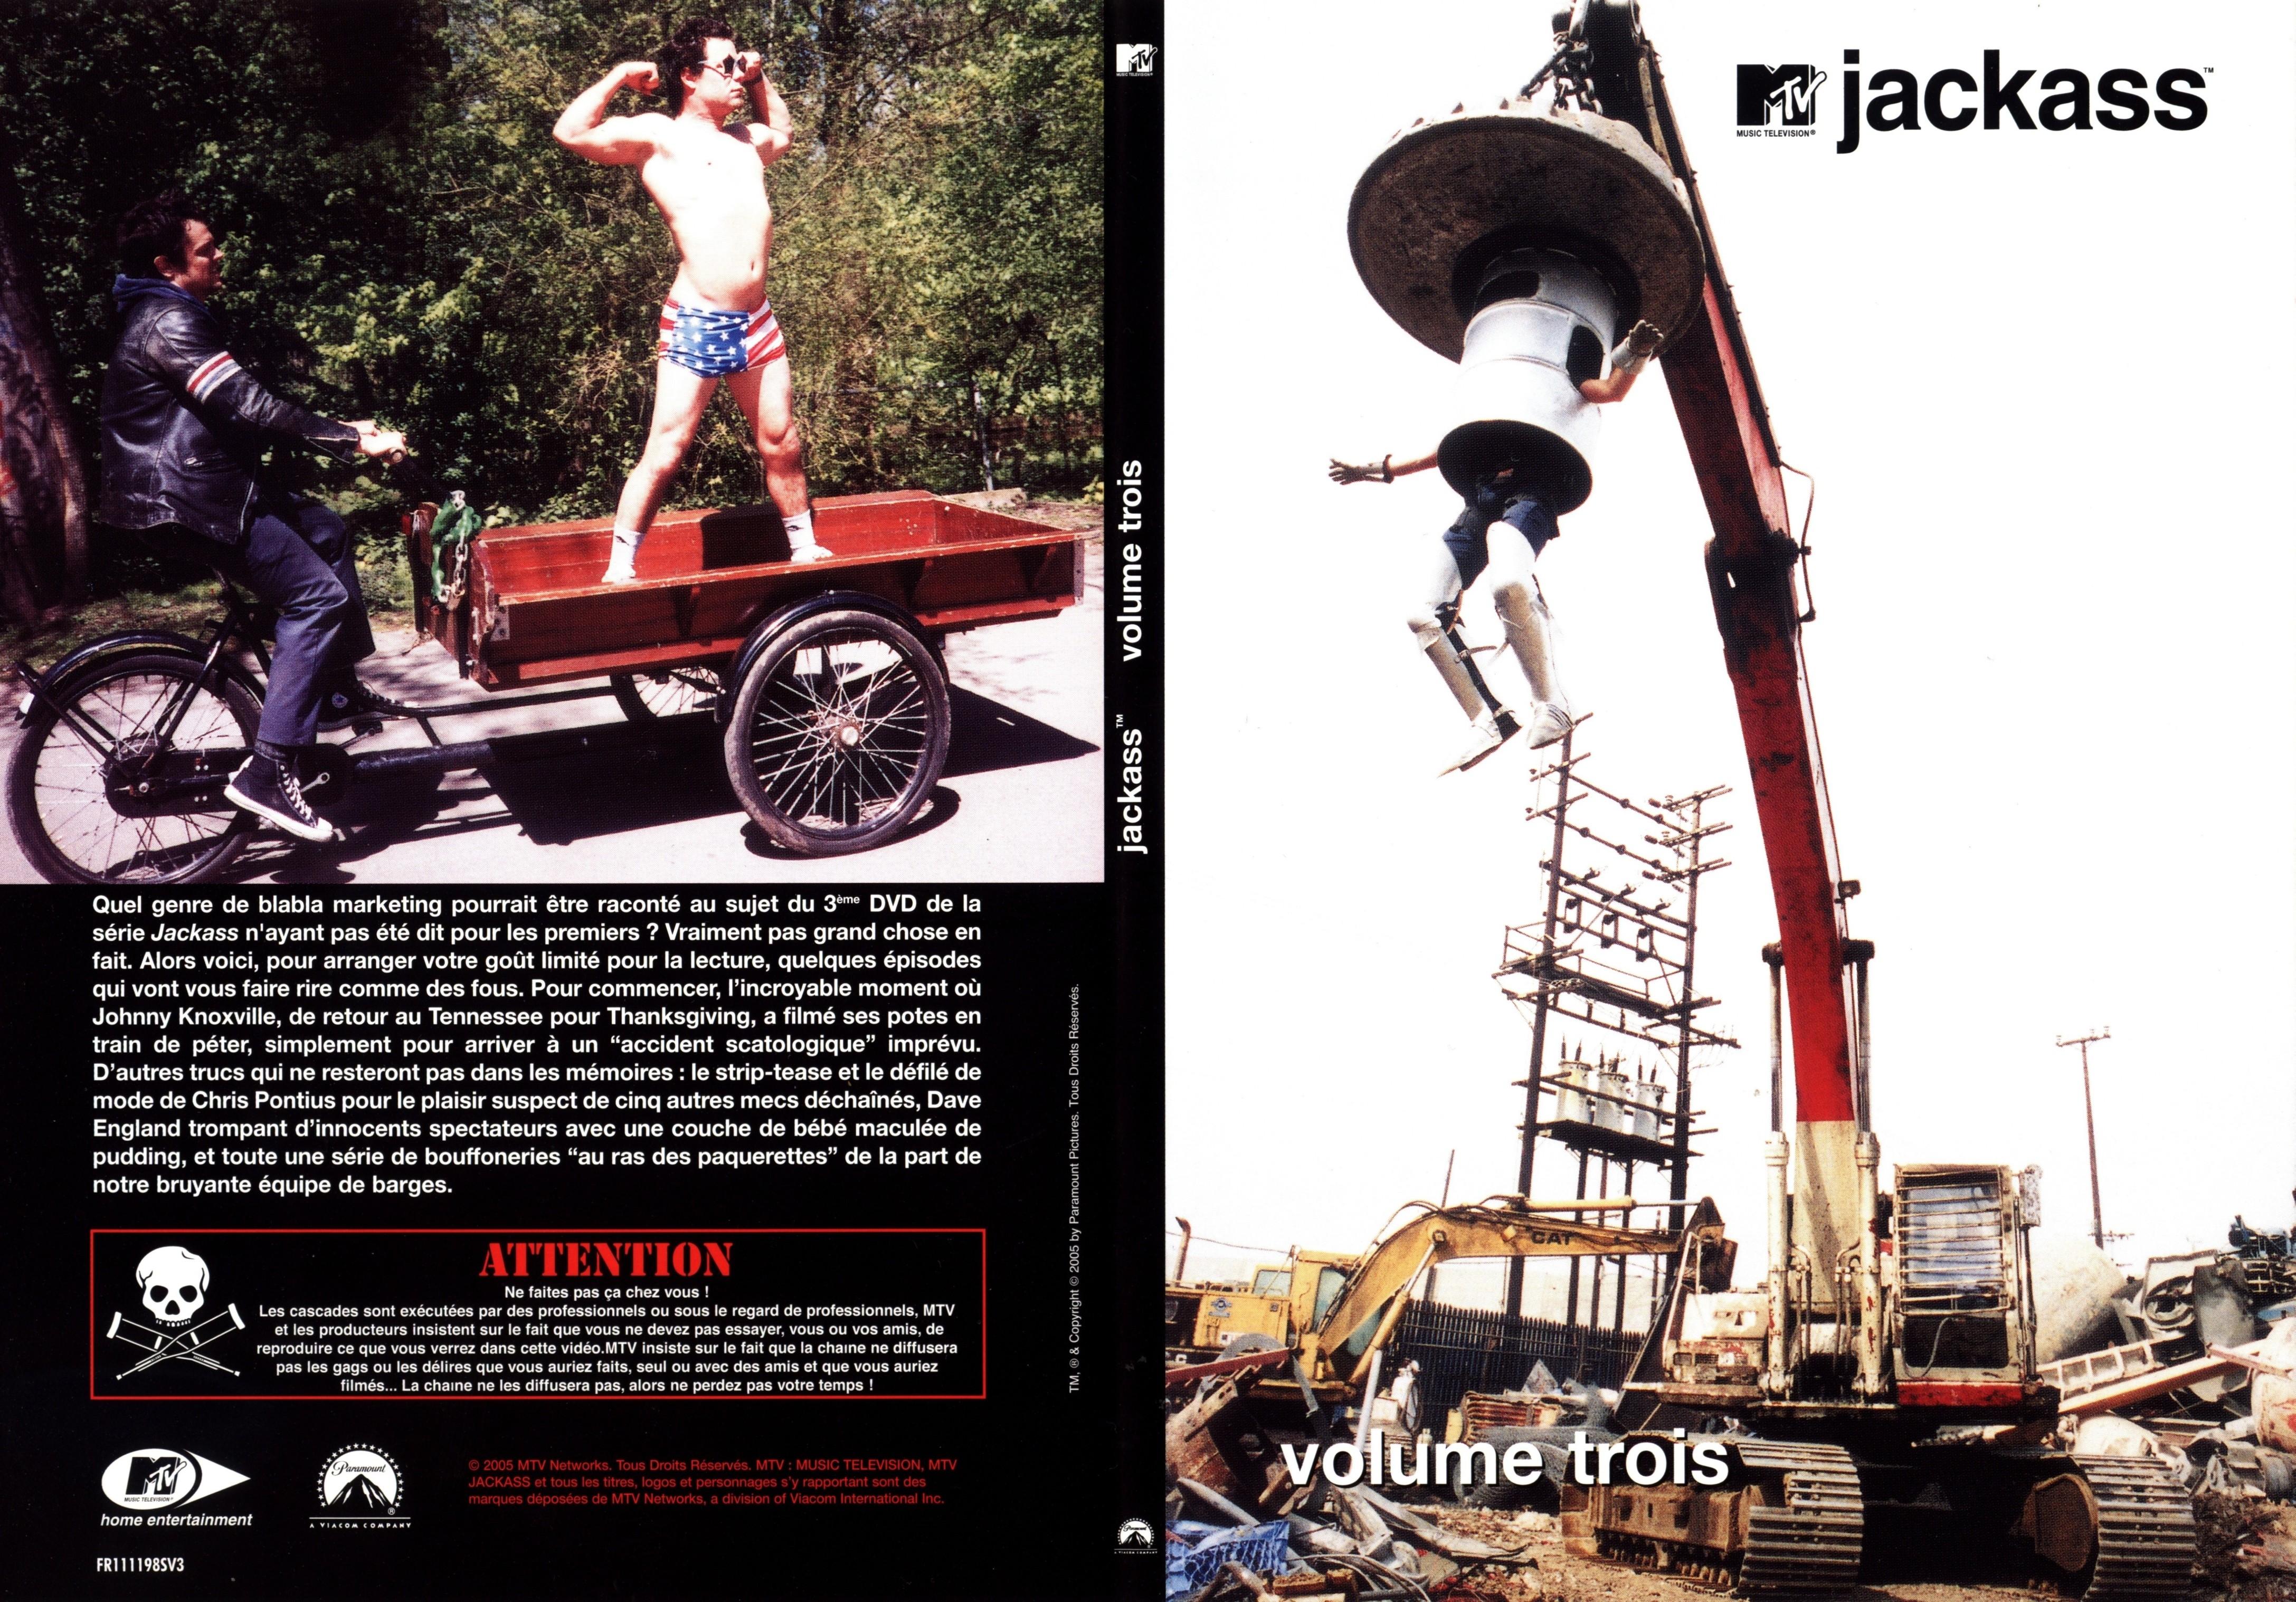 Jaquette DVD Jackass vol 3